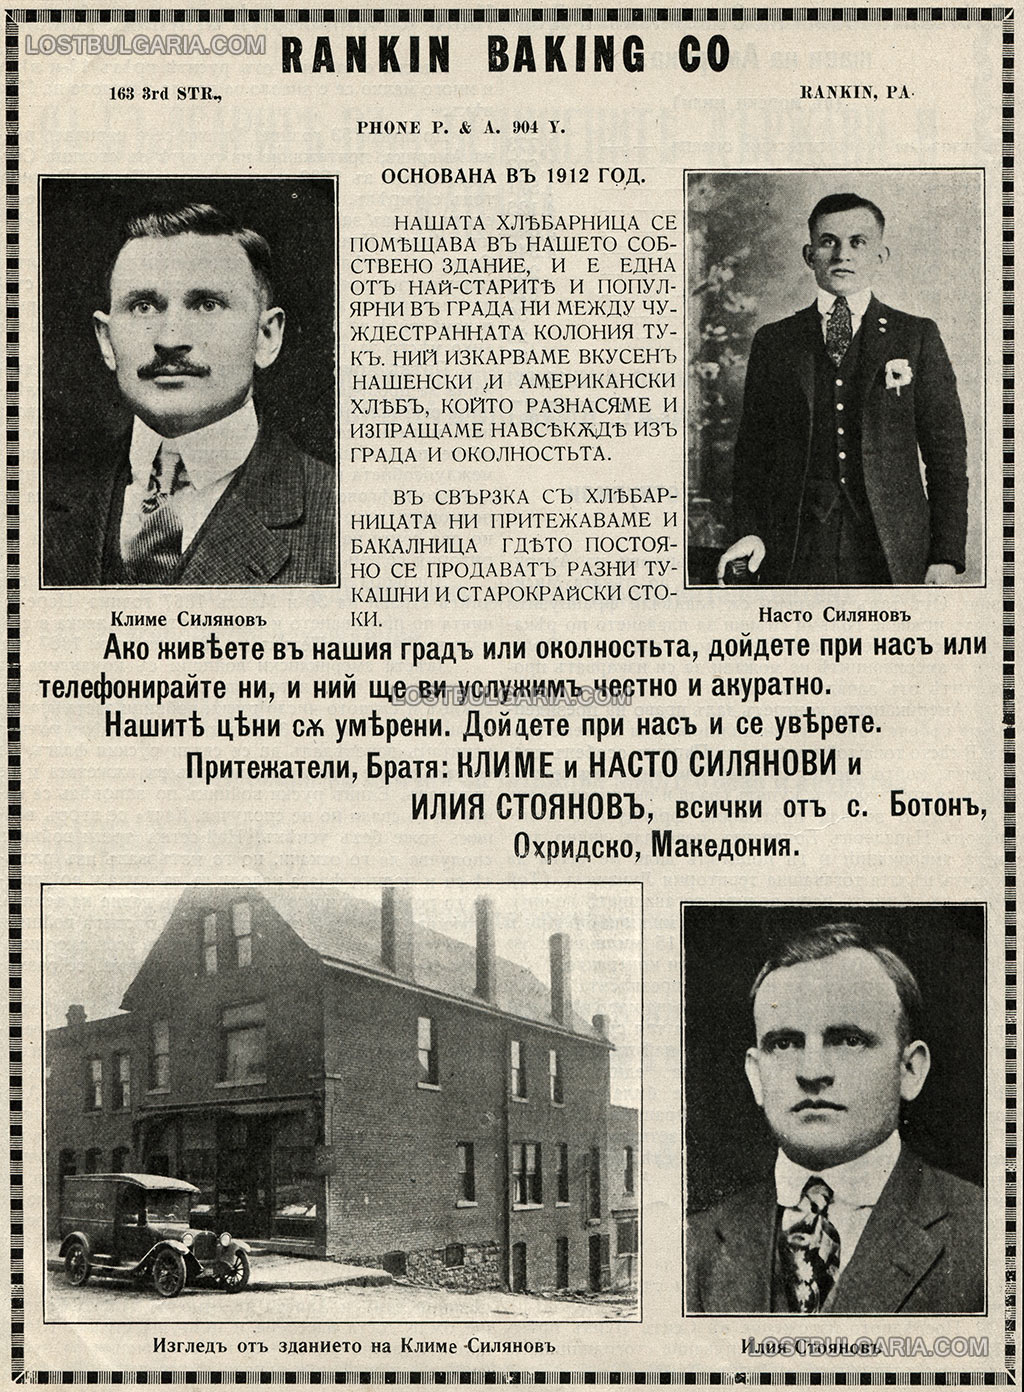 Реклама на хлебарницата на братя Климе и Насто Силянови и Илия Стоянов, всички родом от село Ботон, Охридско в Ранкин, Пенсилвания, 1921 г.